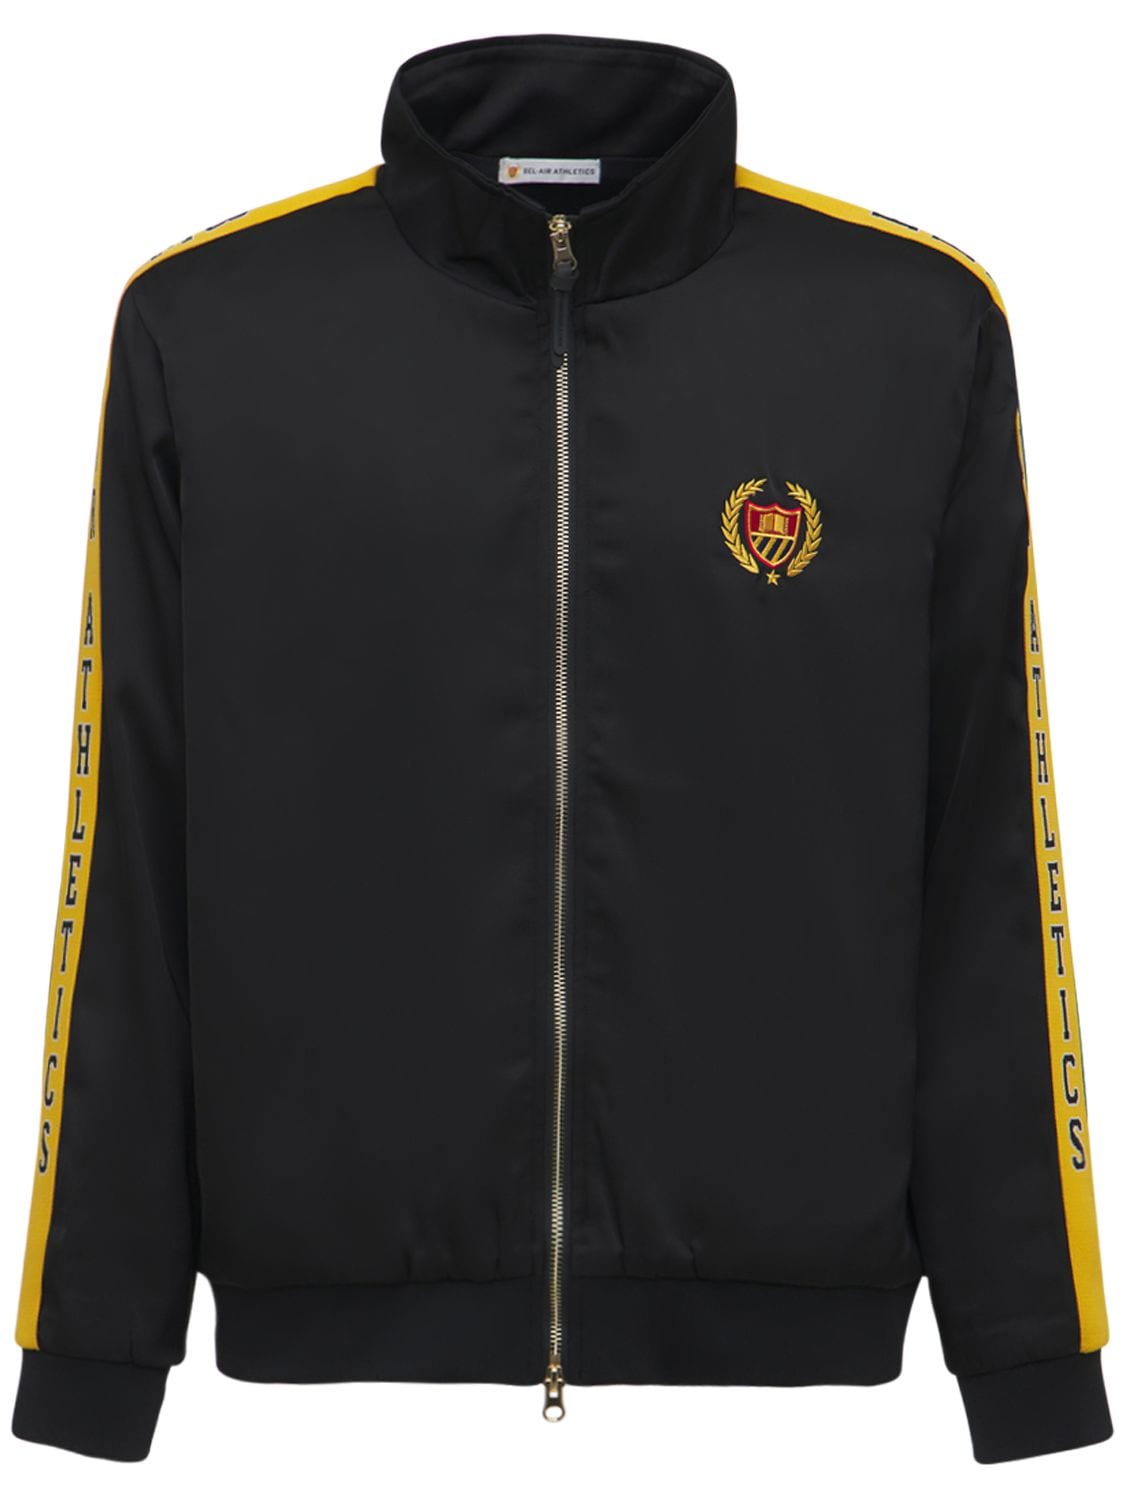 Academy Crest Track Jacket - BEL-AIR ATHLETICS - Modalova